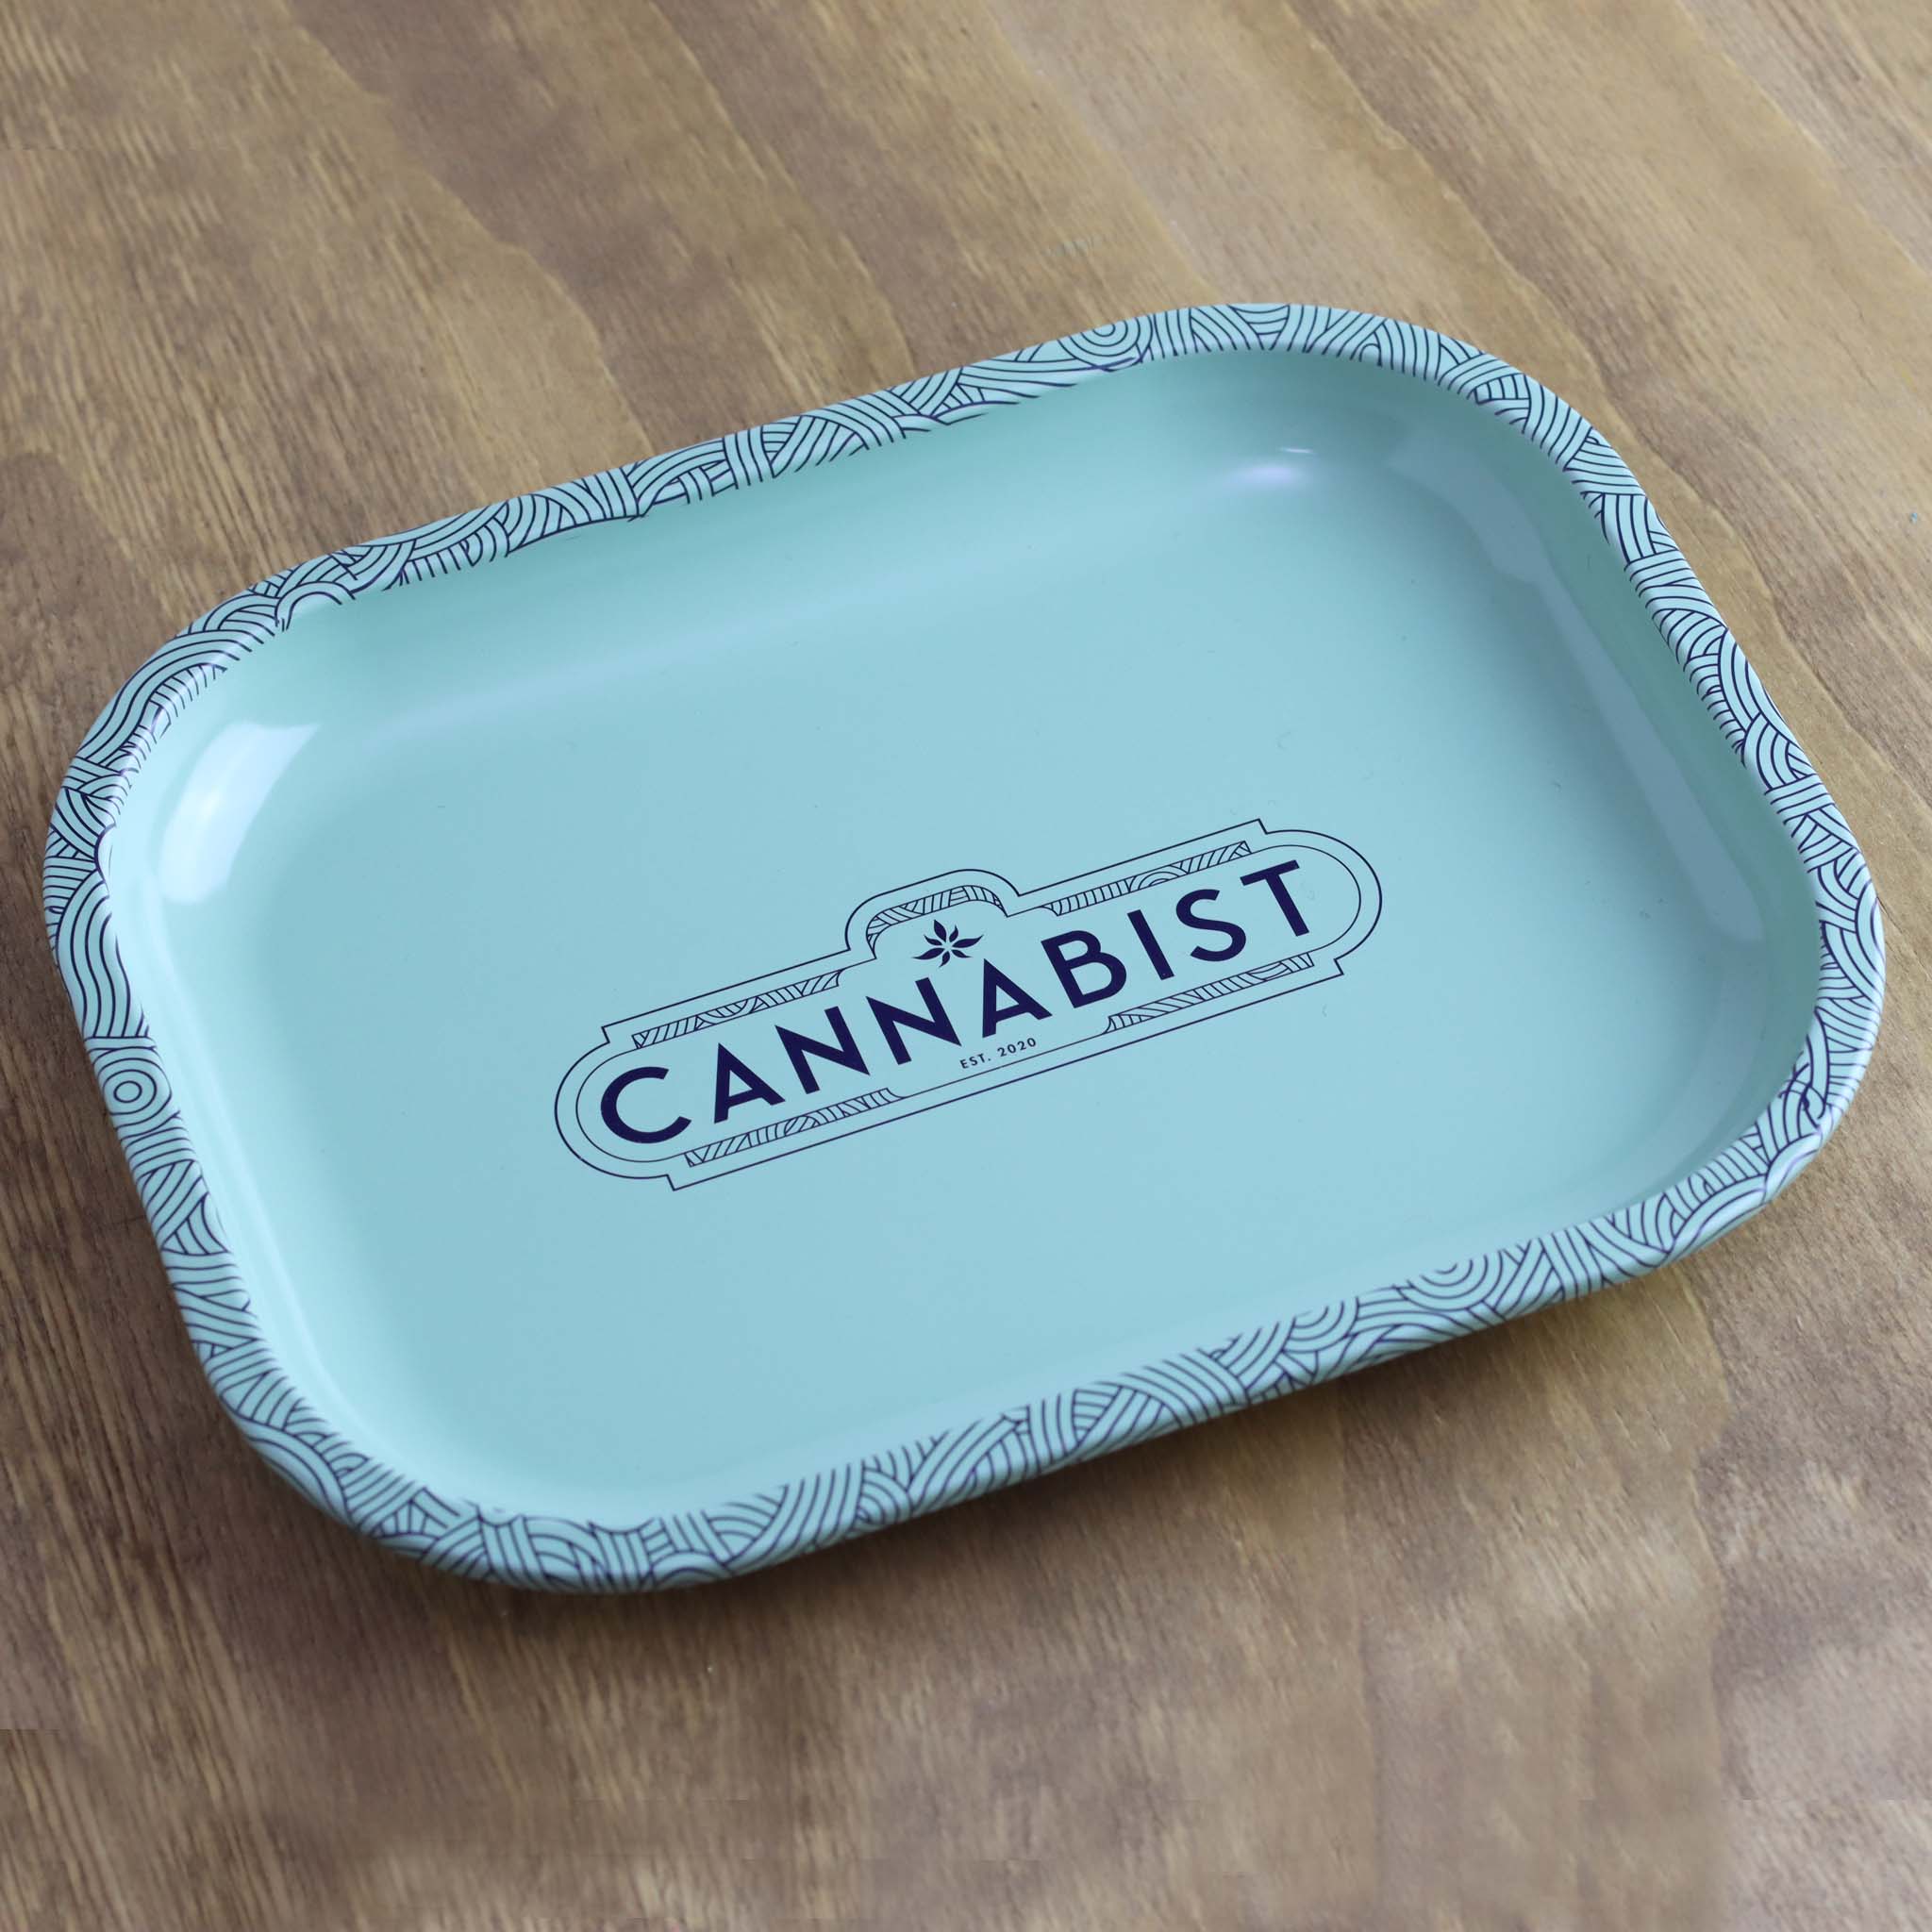 Cannabist Rolling Tray